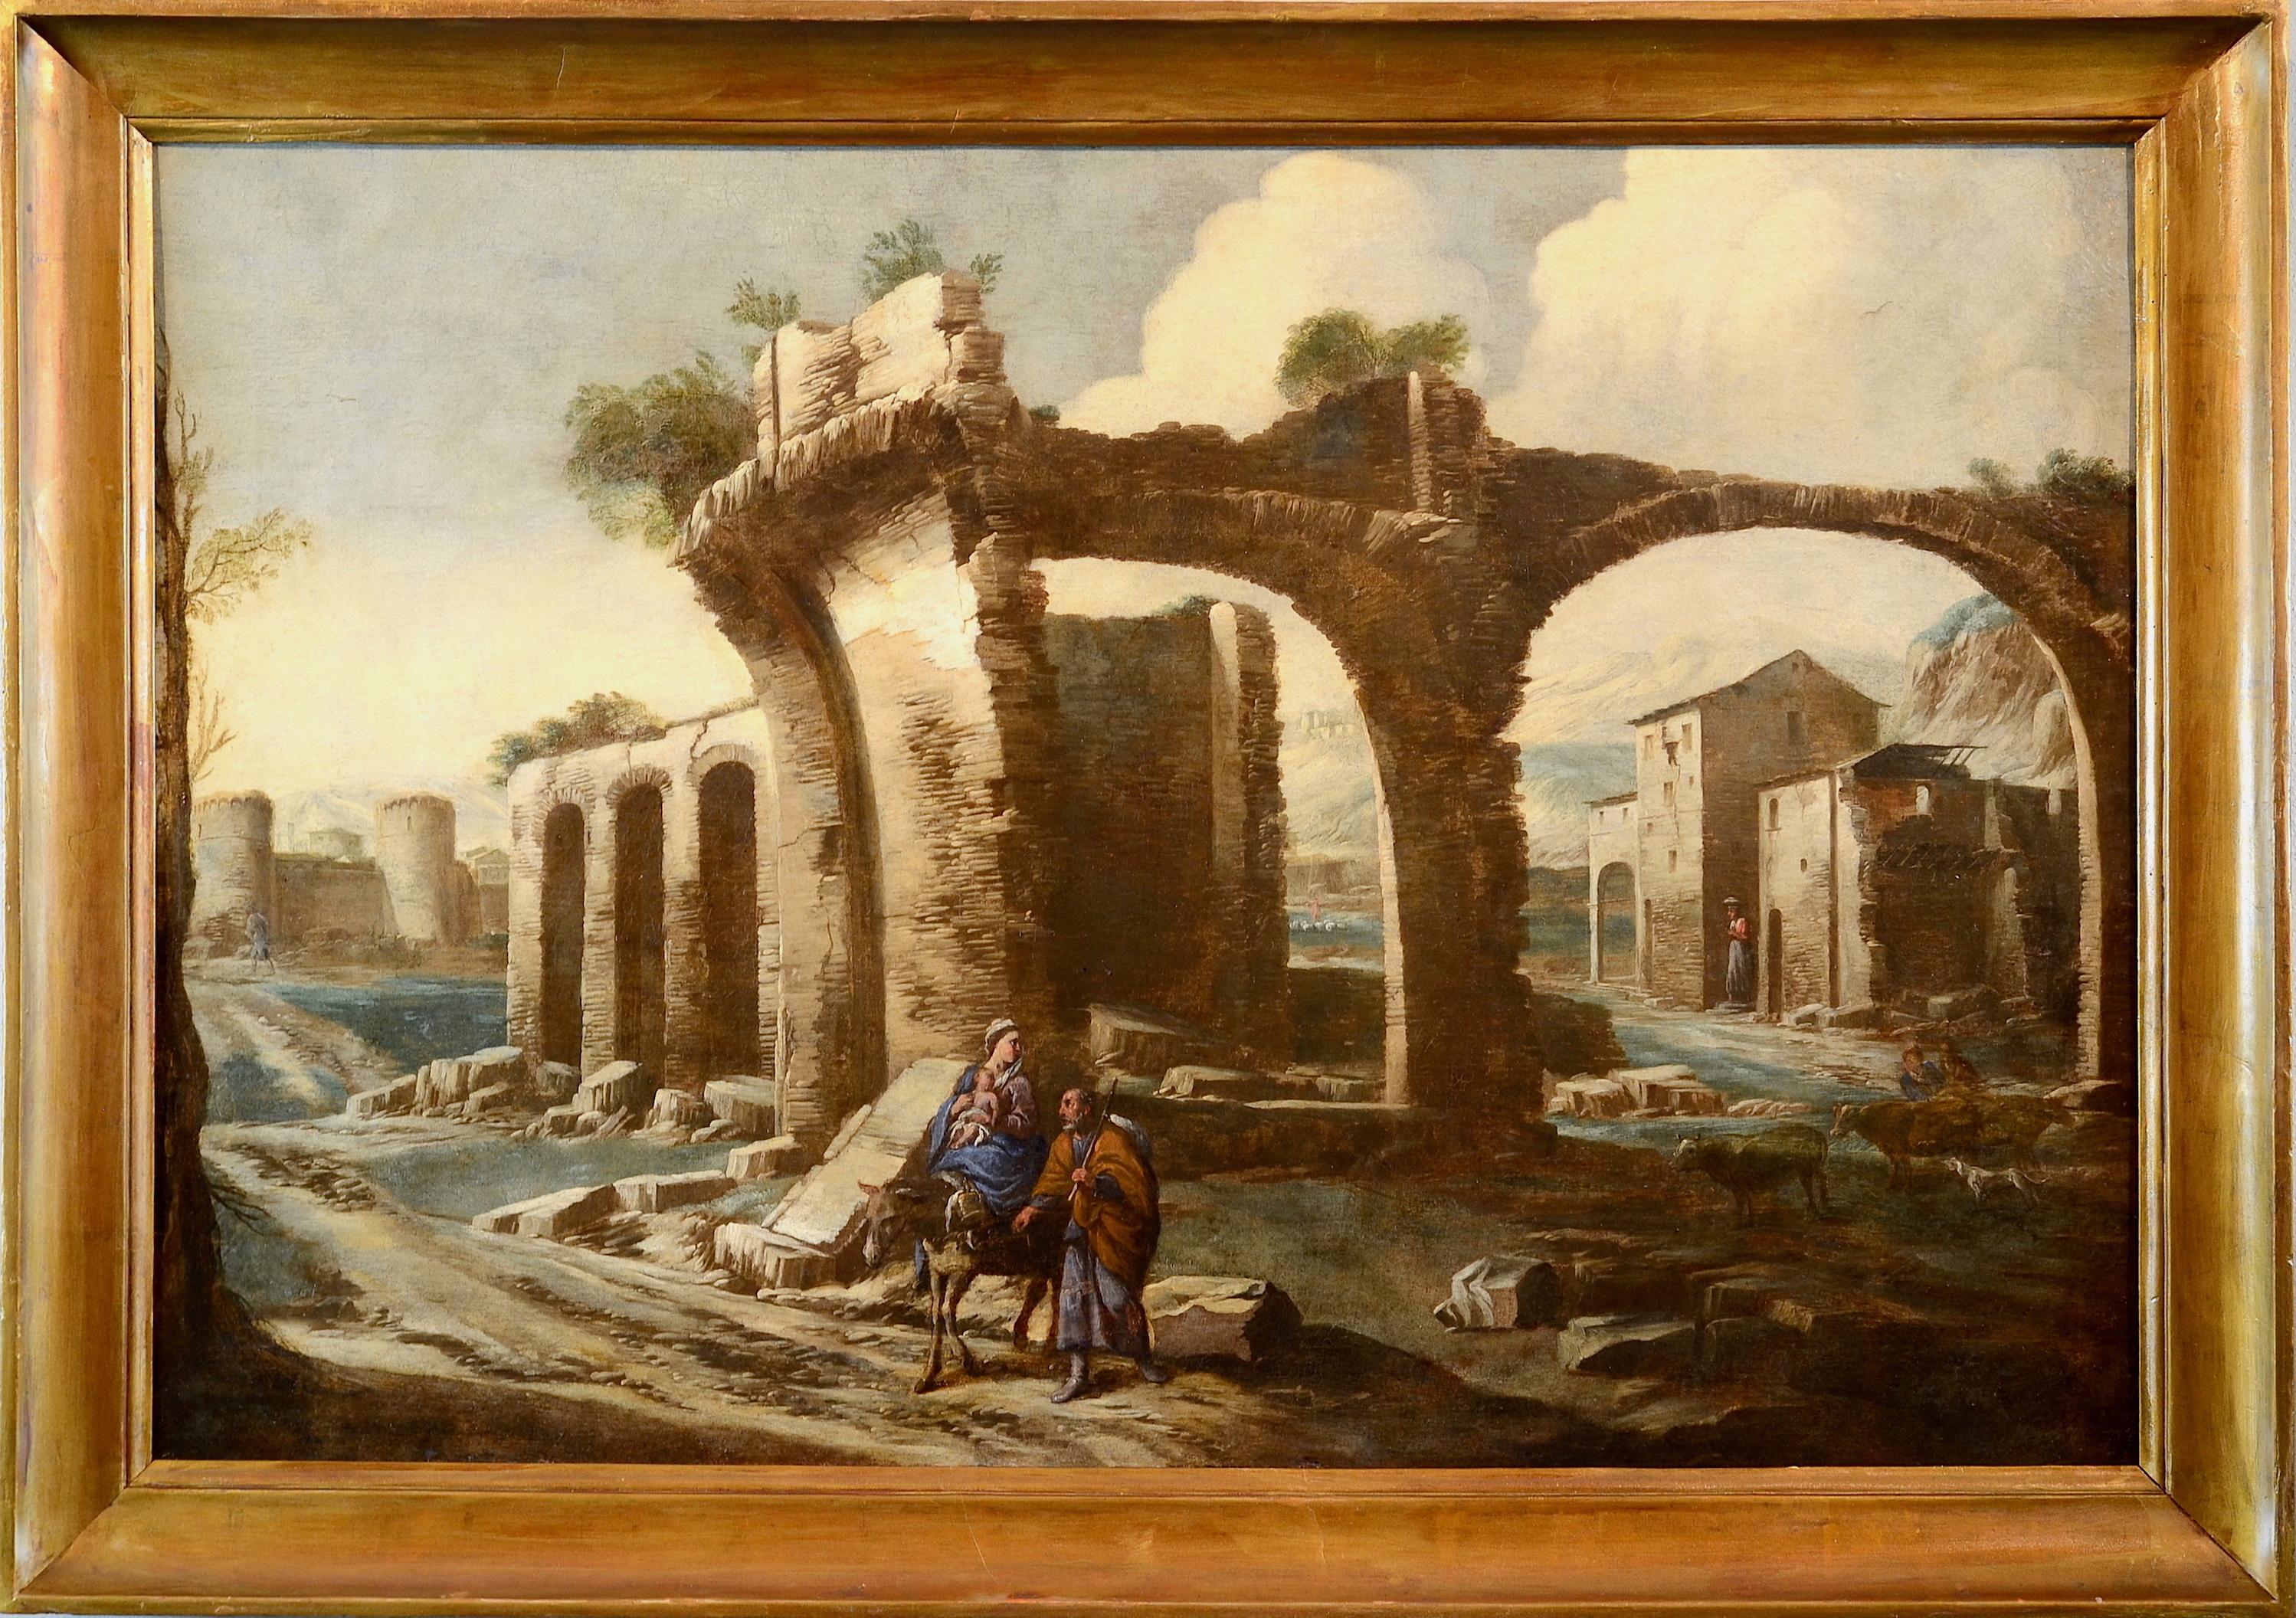 Antonio Travi, genannt Sestri
(Genua, Sestri Ponente 1608 - Genua 1665)
Landschaft mit Ruinen und biblischer Szene

Erste Hälfte des siebzehnten Jahrhunderts
öl auf Leinwand, 82 x 121 cm

Das schöne Gemälde veröffentlicht, die eine weite Landschaft